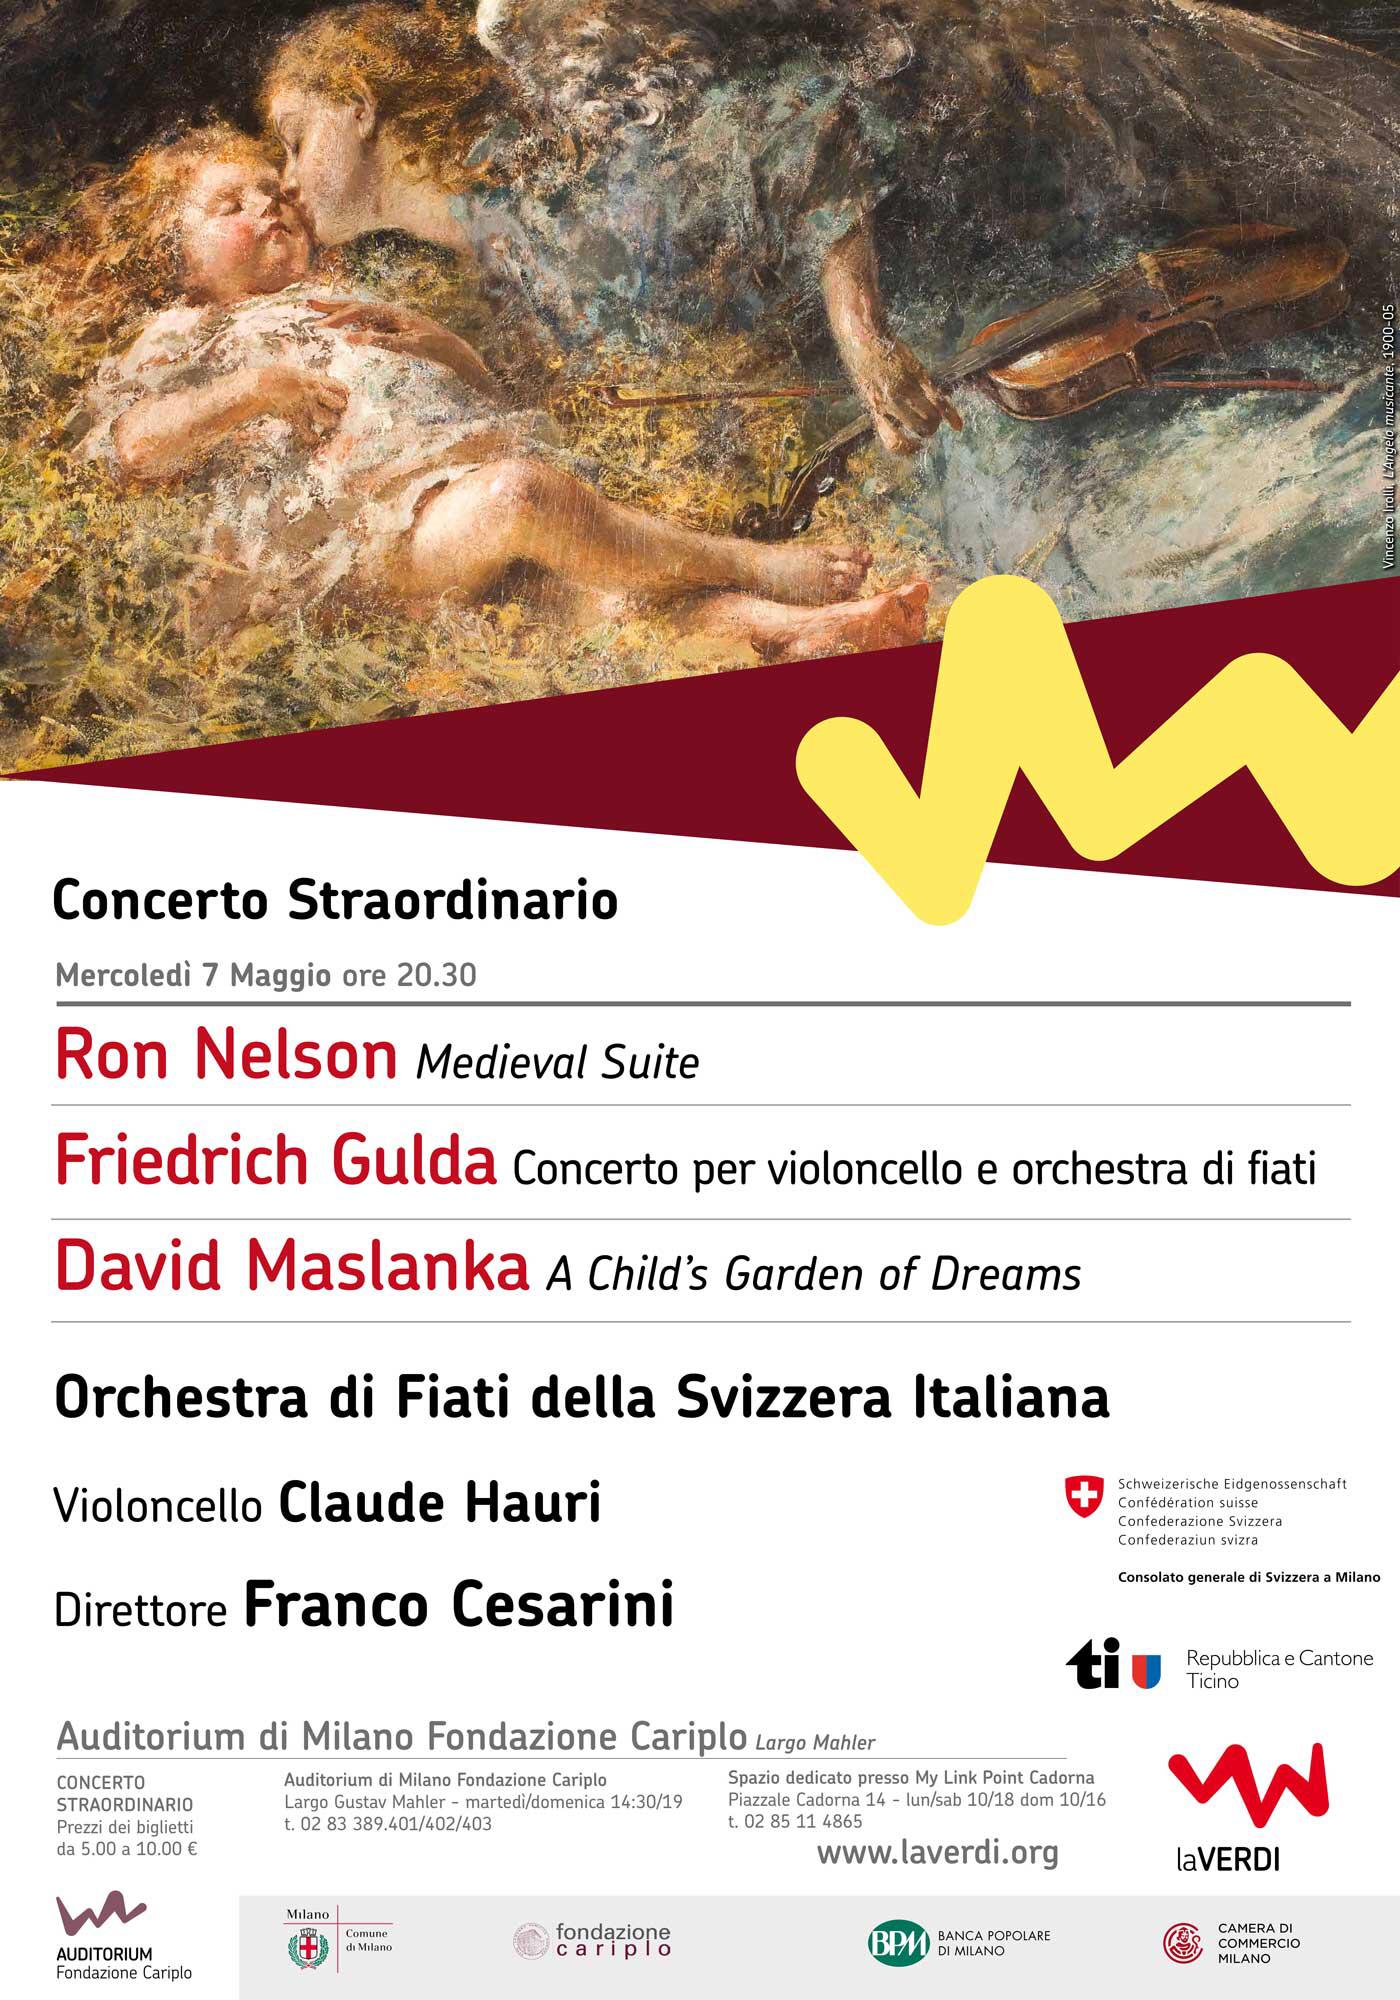 Concerto Straordinario - Orchestra di Fiati della Svizzera Italiana, Milano, Italy